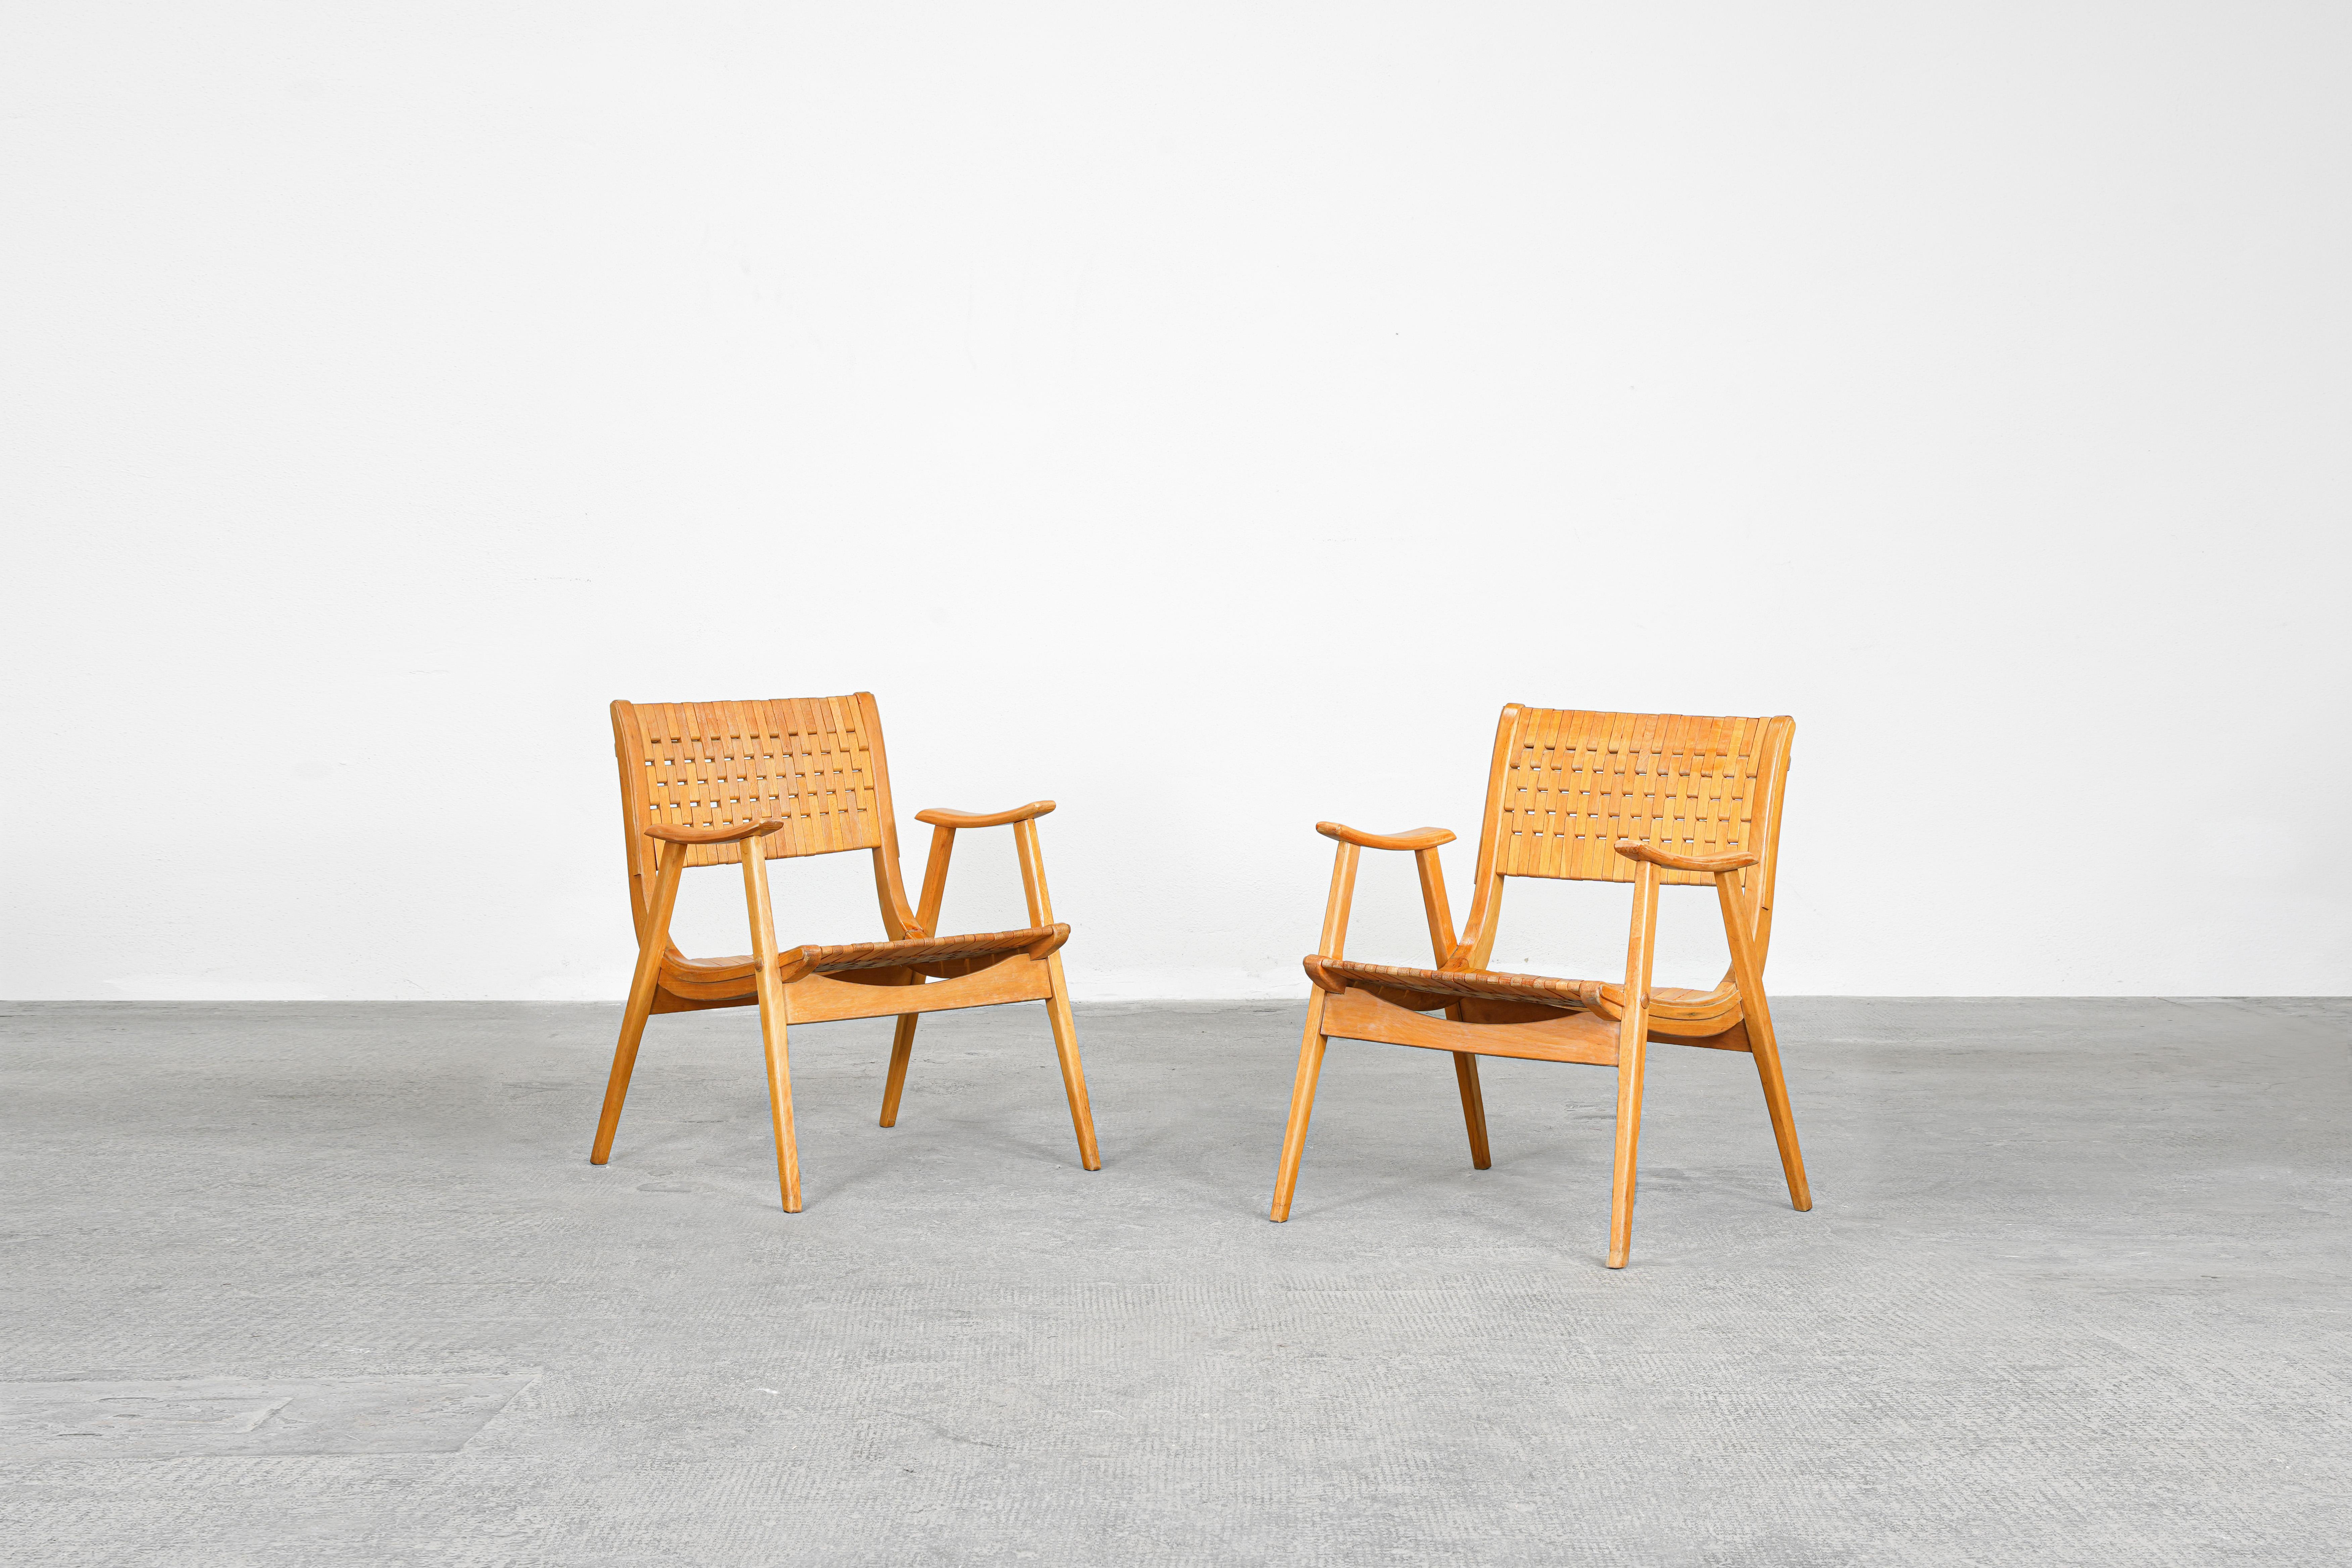 Paar Sessel, entworfen von Erich Dieckmann und hergestellt von Gelenka, Deutschland, 1930er Jahre

Dieses Paar deutscher Bauhaus-Sessel wurde in den 1930er Jahren von Erich Dieckmann entworfen. Die Stühle zeichnen sich durch starke, klare Linien